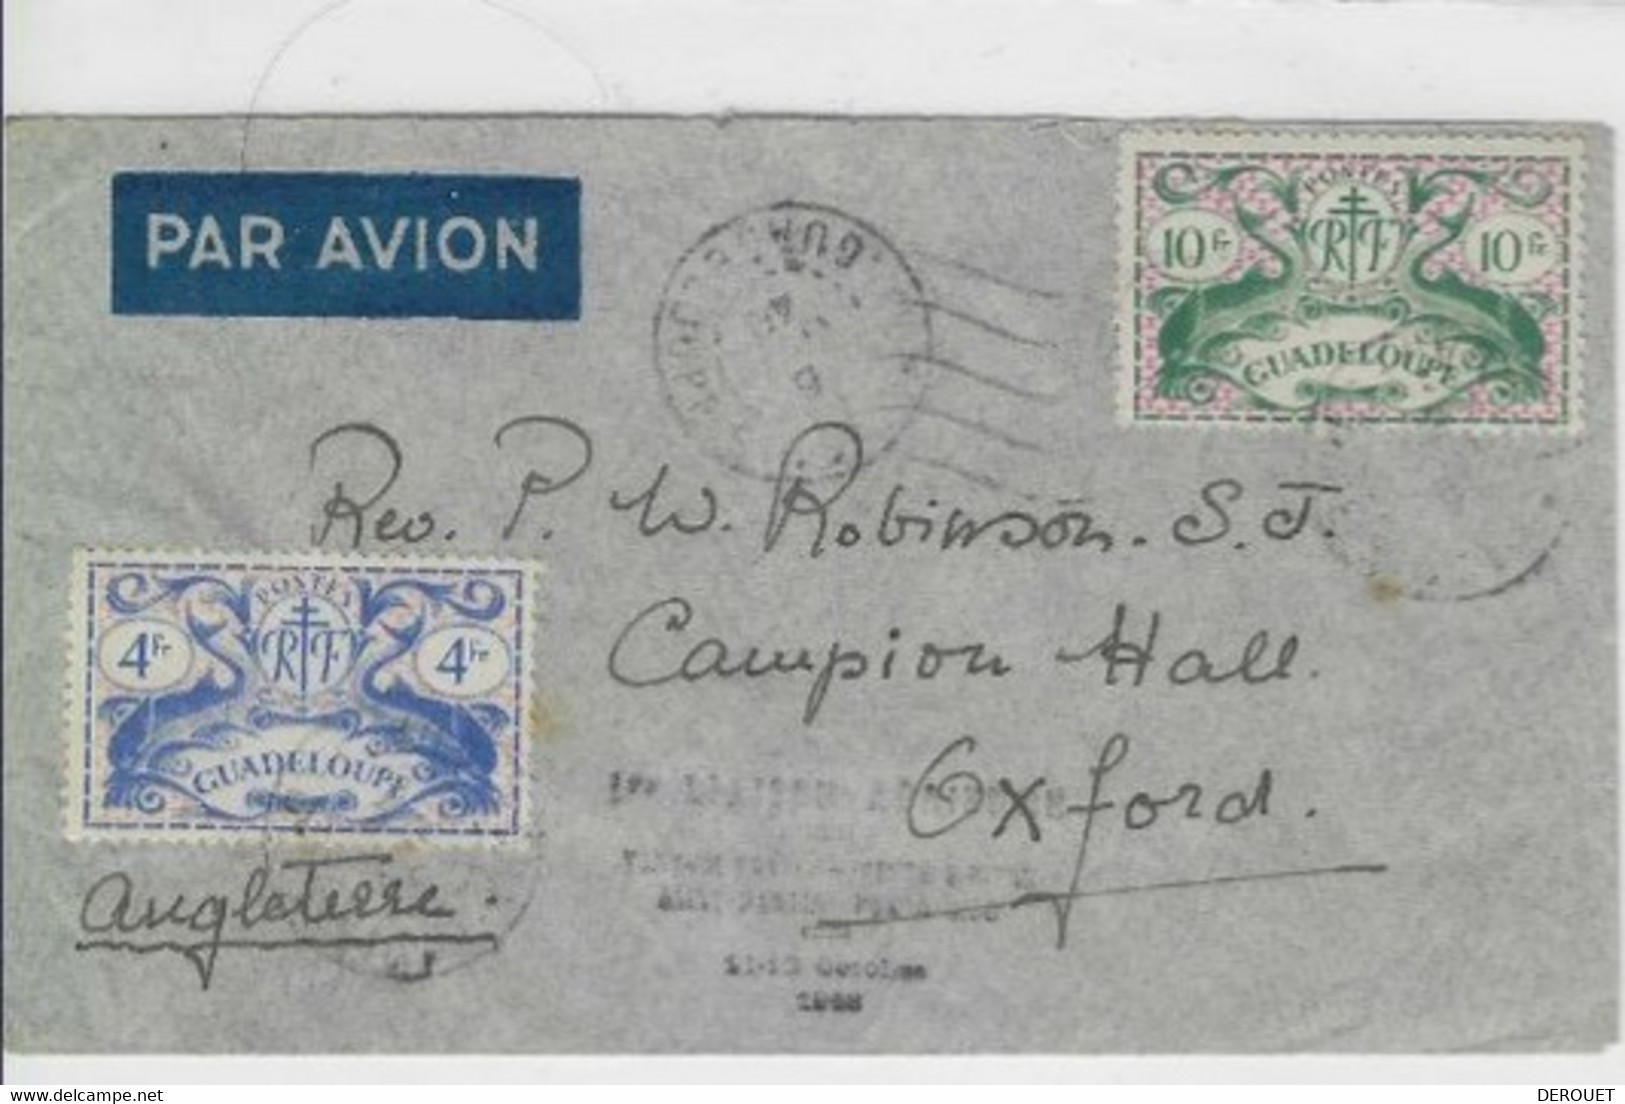 Air France - 11 10 1948 - Première Liaison Pointe à Pitre - Saint Martin - Sanjuan (Porto Rico) - Airmail